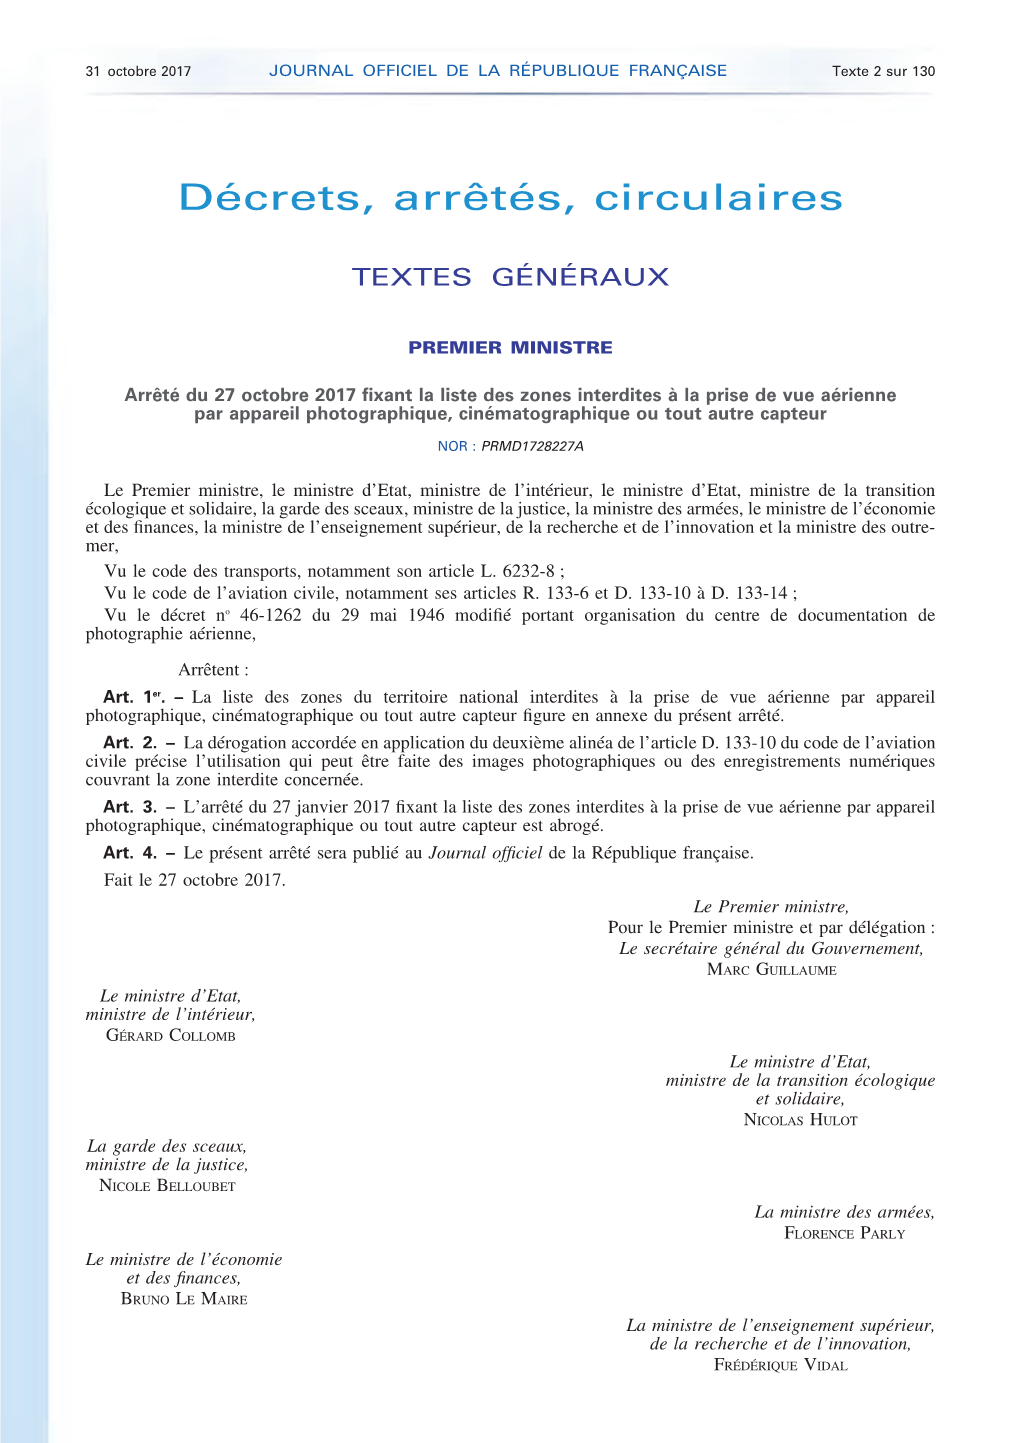 JOURNAL OFFICIEL DE LA RÉPUBLIQUE FRANÇAISE Texte 2 Sur 130